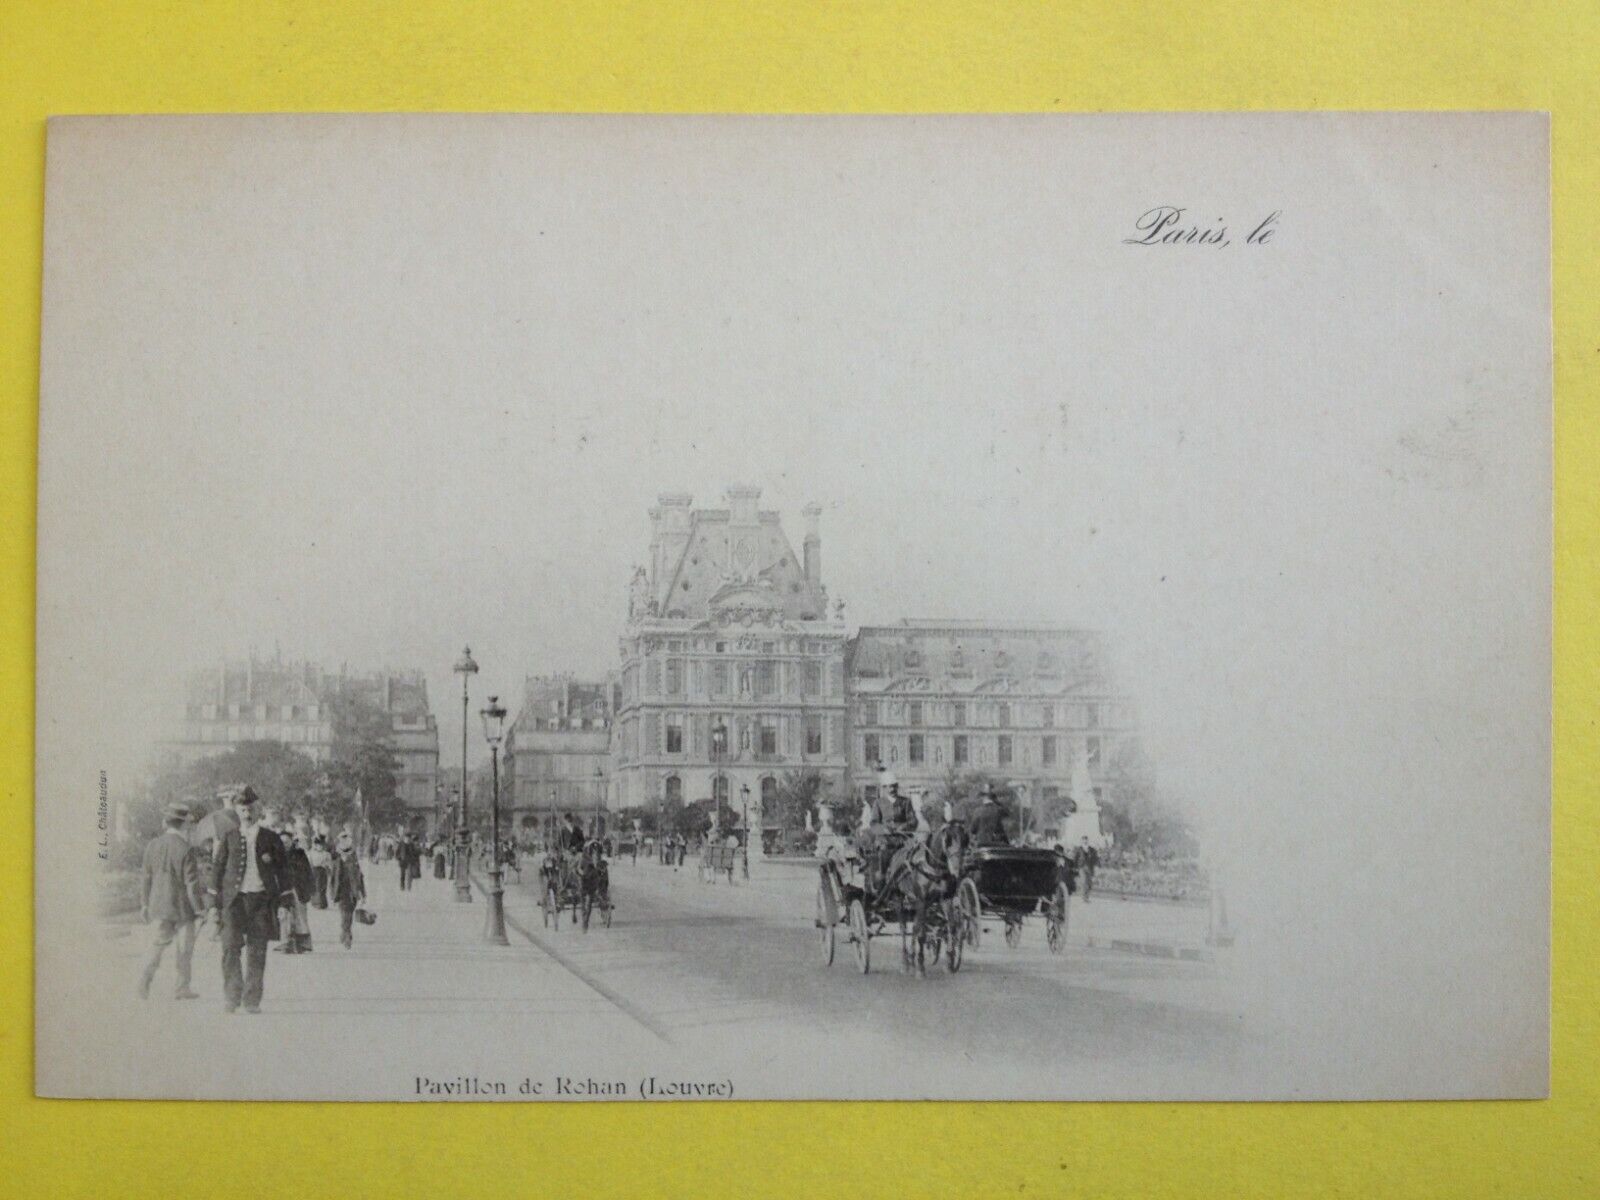 cpa PARIS in 1900 Transport Circulation COUPLING CAR CAR CAR Horses